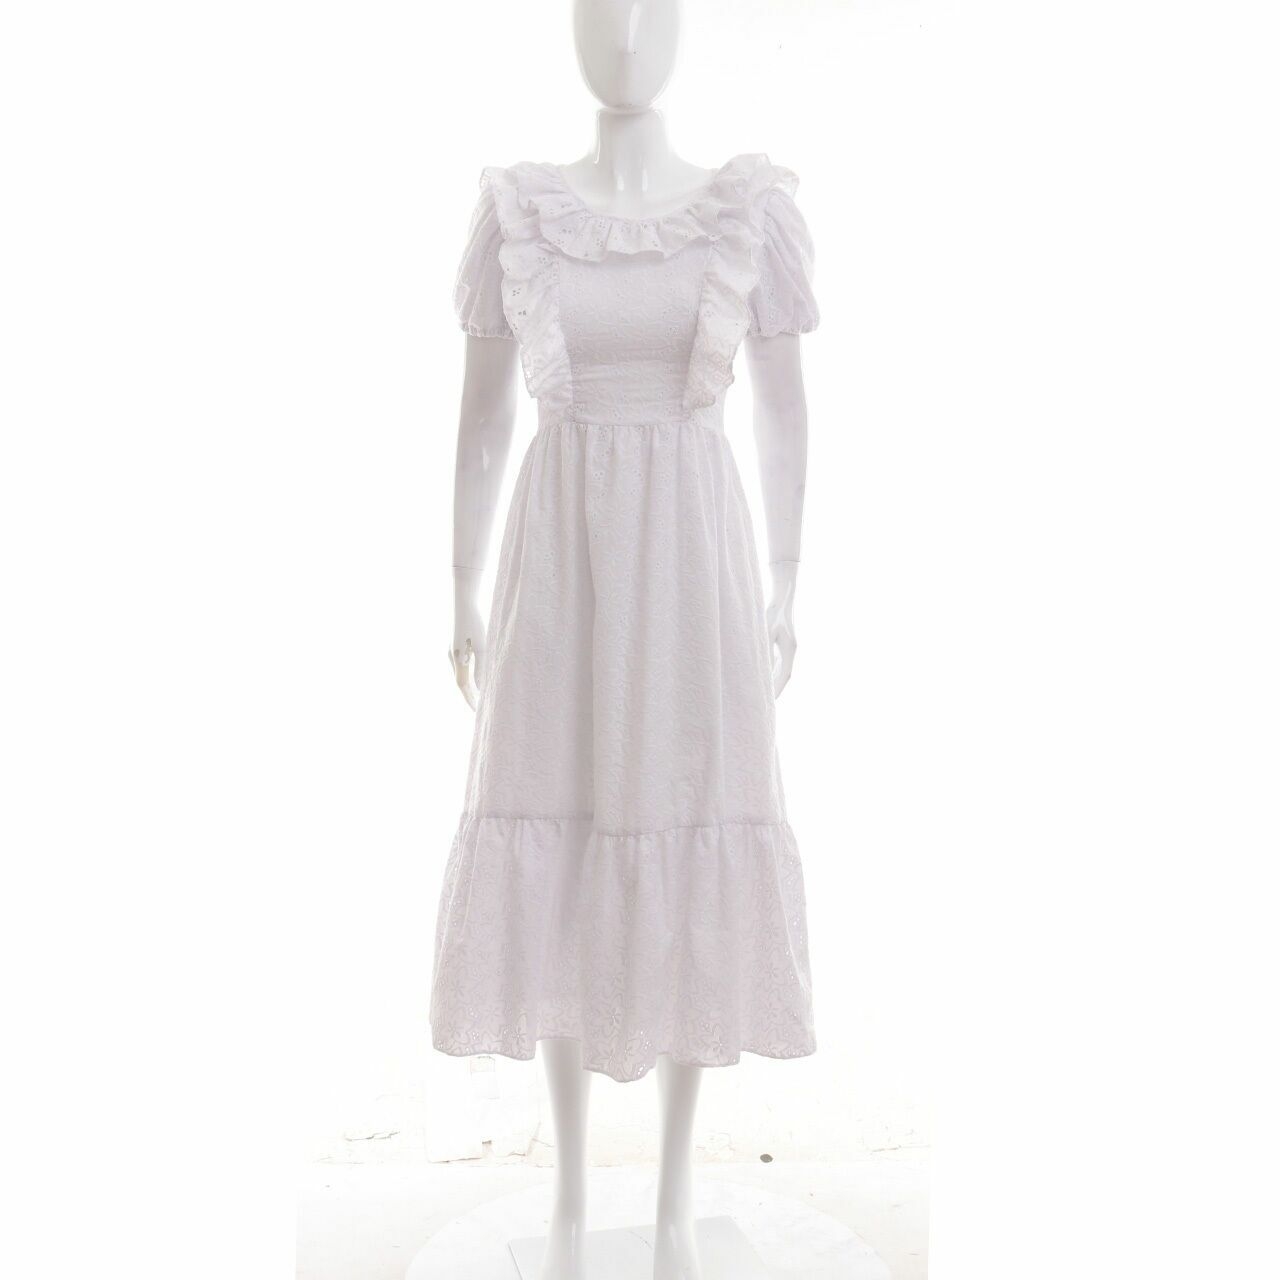 Poise24 White Long Dress